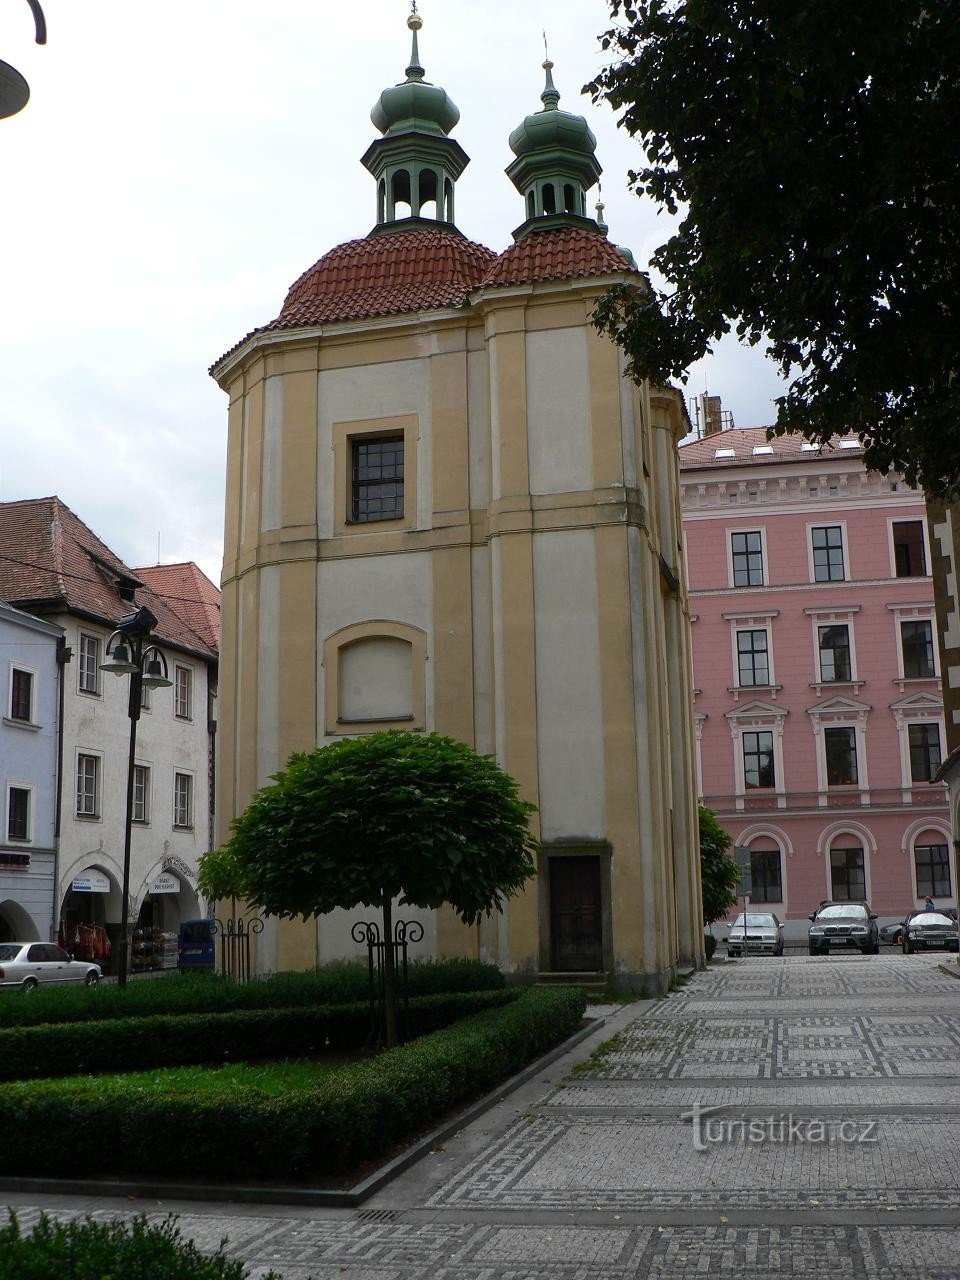 No. Budějovice, Cappella delle Ansie Mortali del Signore